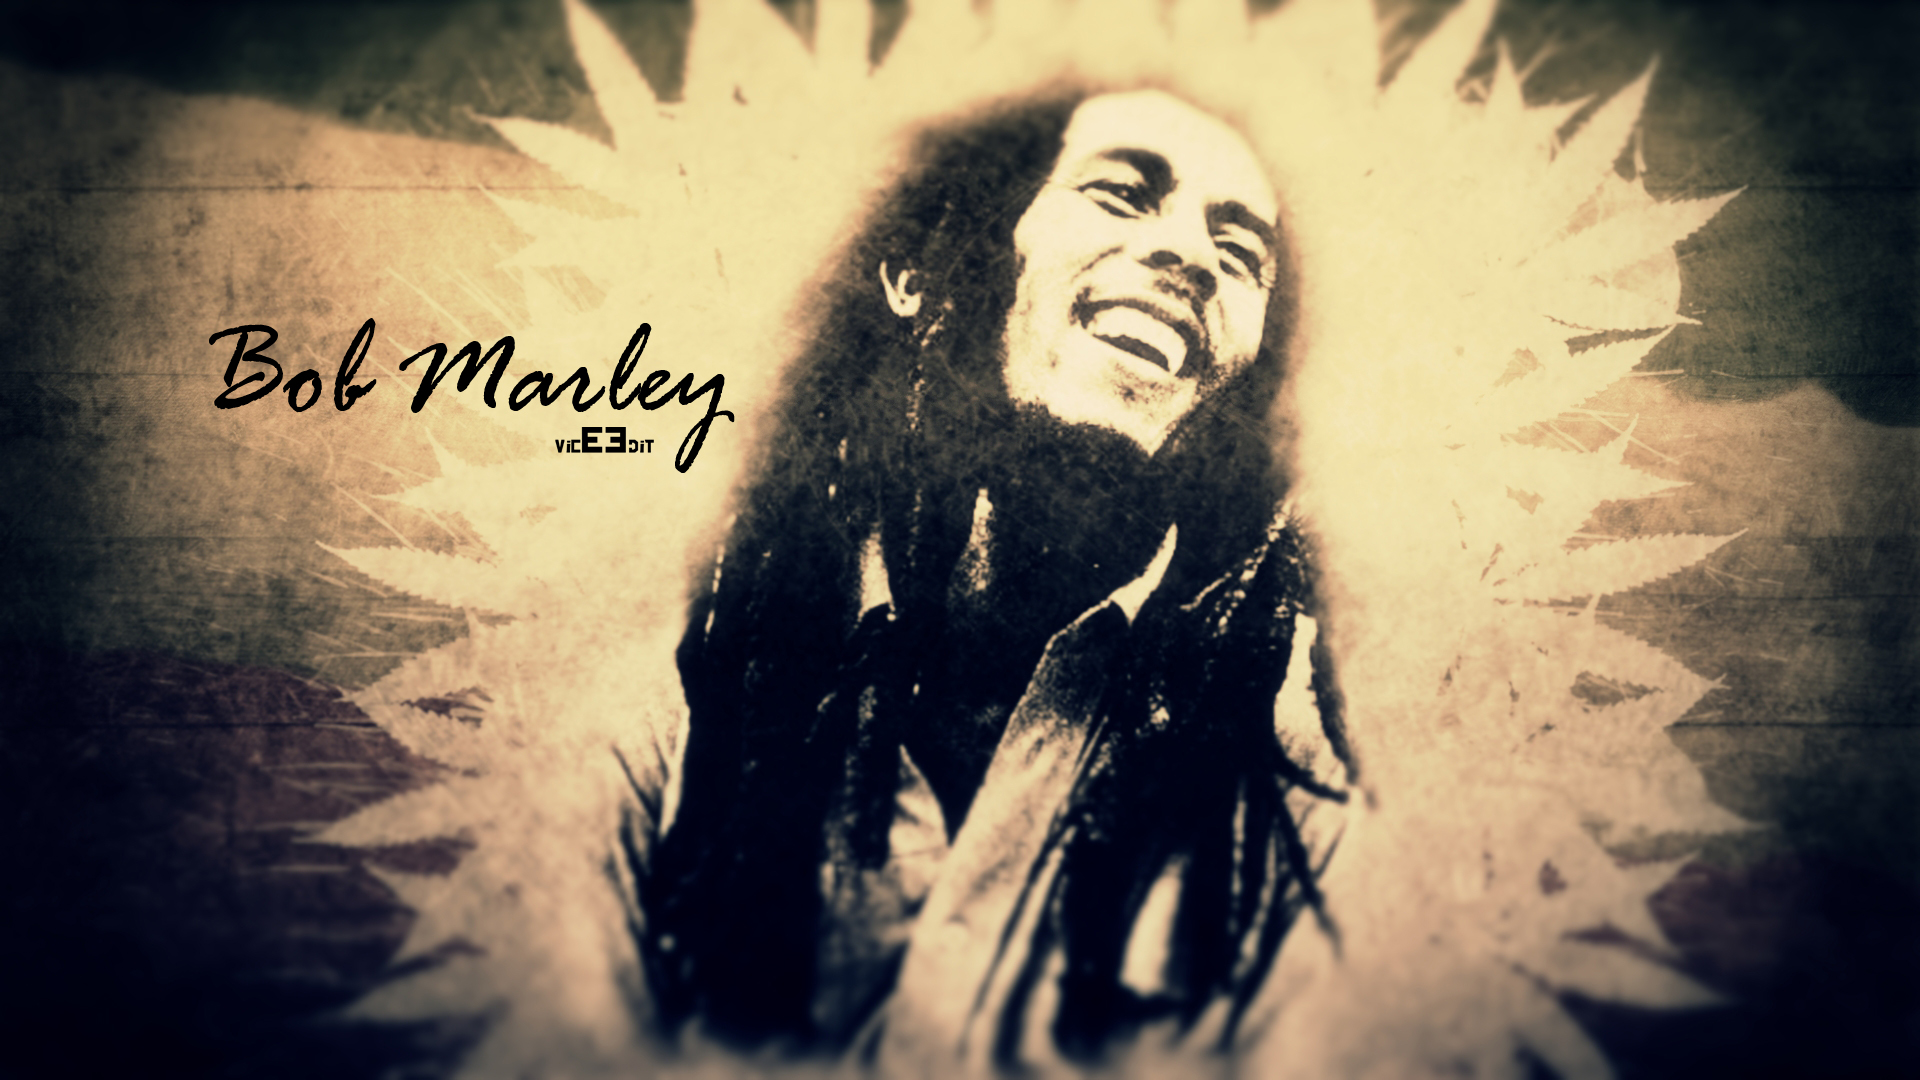 Bob Marley Wallpaper by ViCEEDiT on DeviantArt